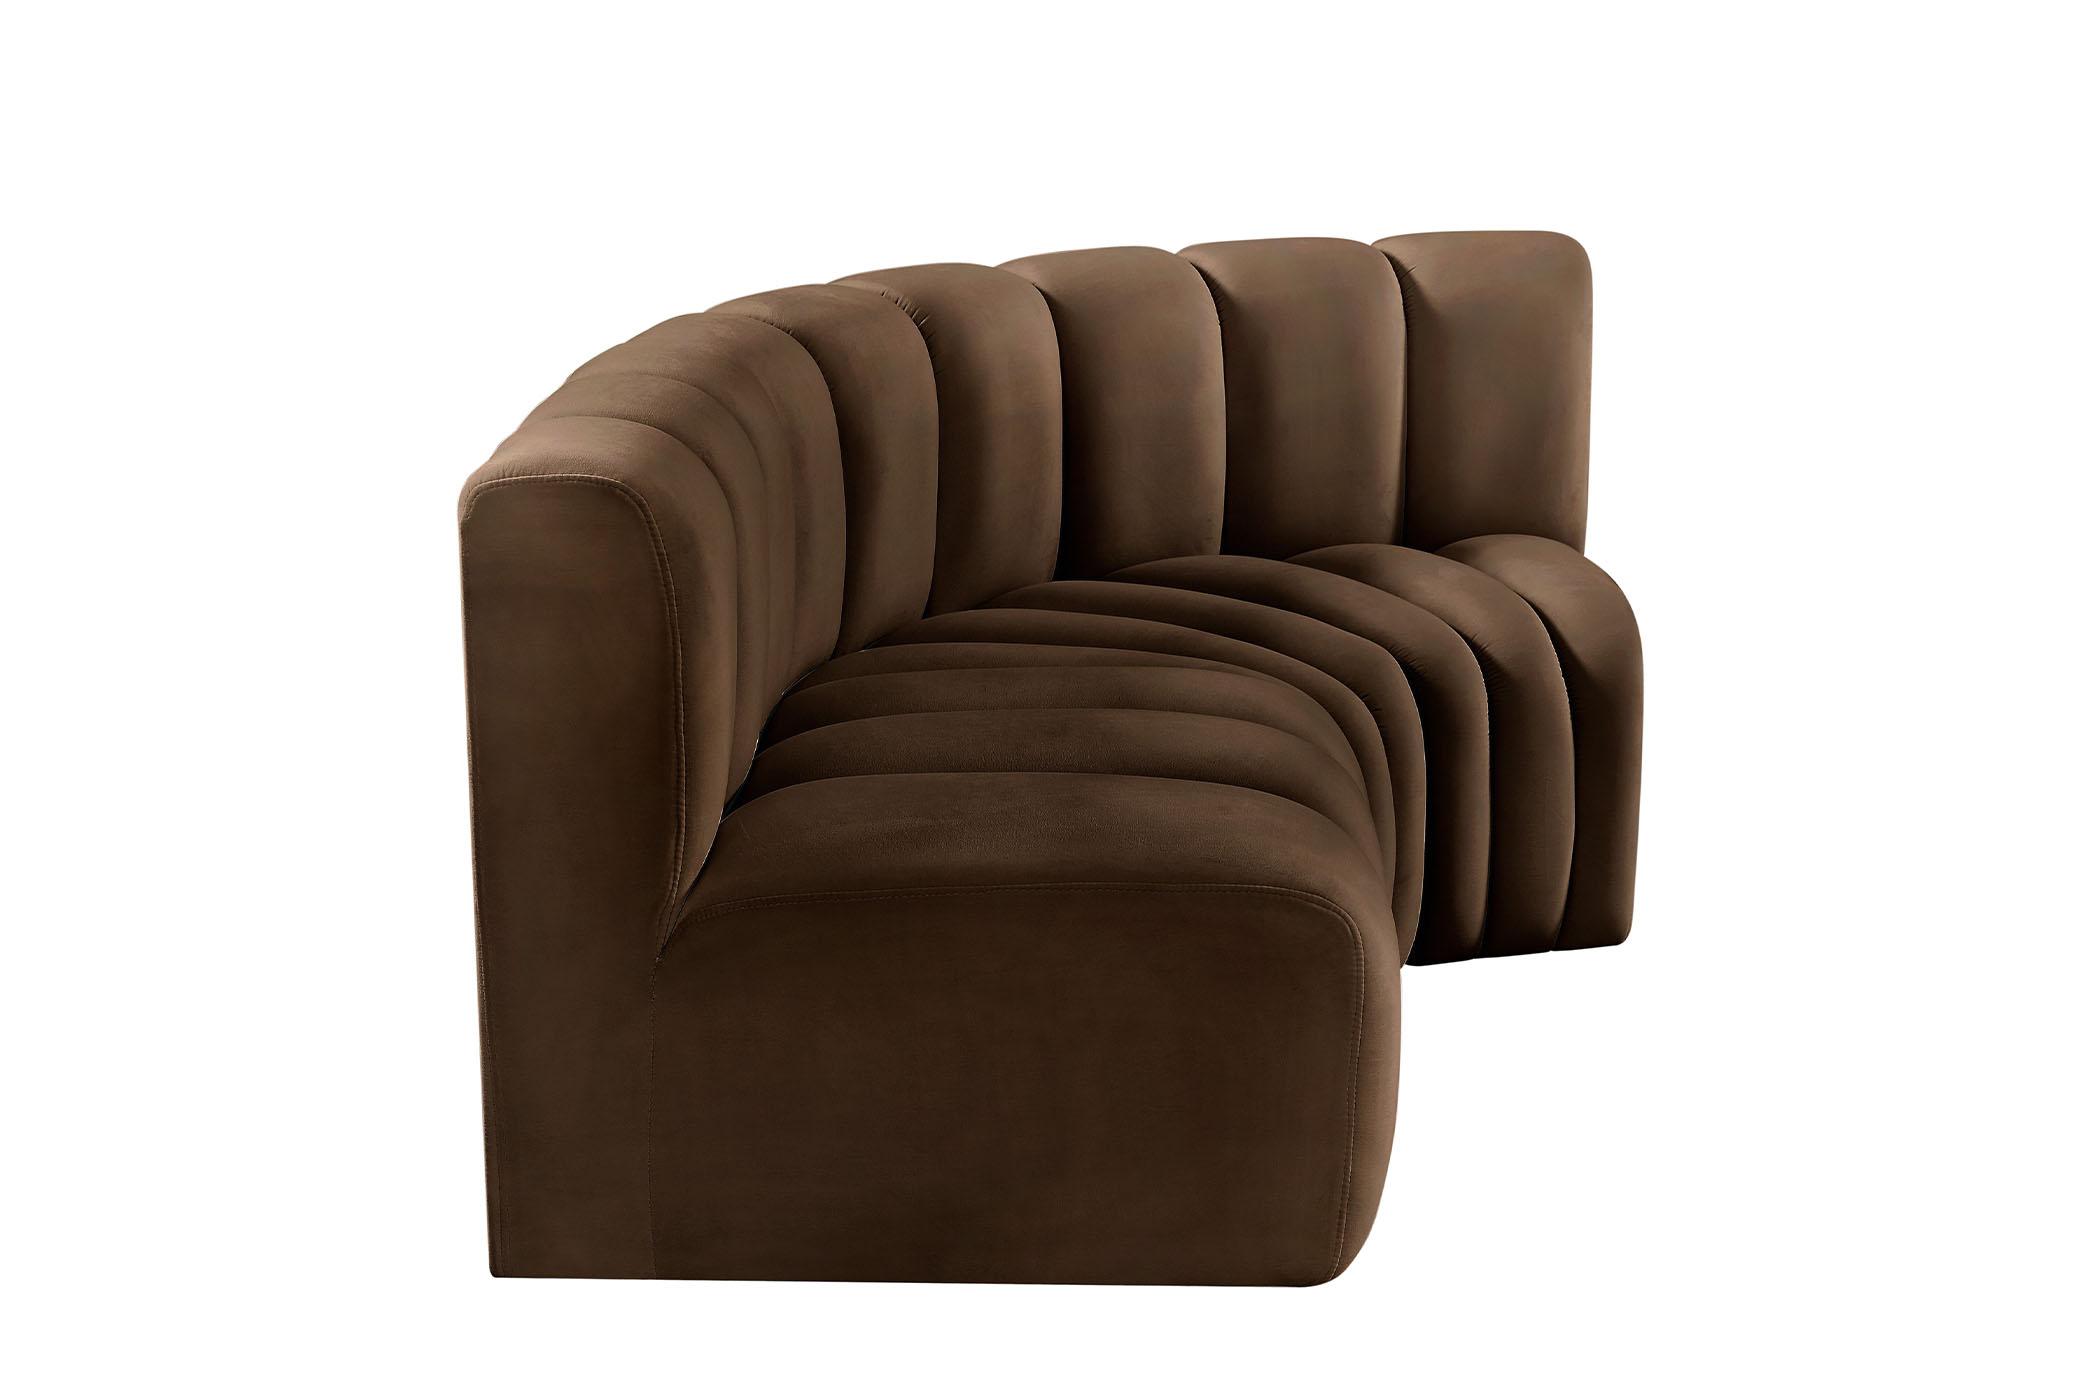 

    
103Brown-S3A Meridian Furniture Modular Sectional Sofa
